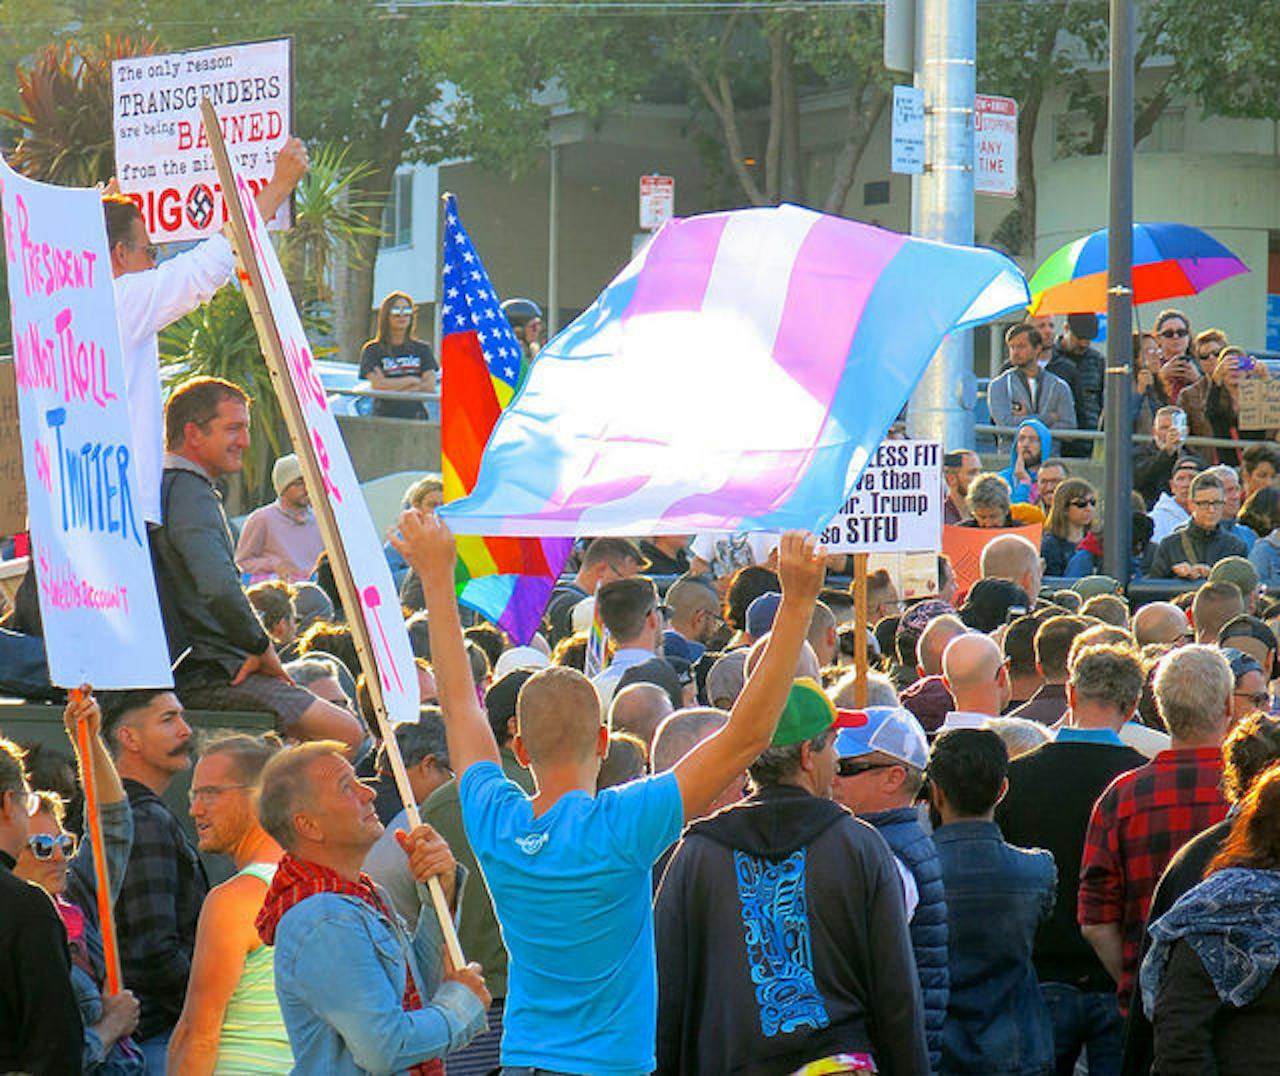 Een groep mensen protesteert tegen de discriminatie van transgenders.